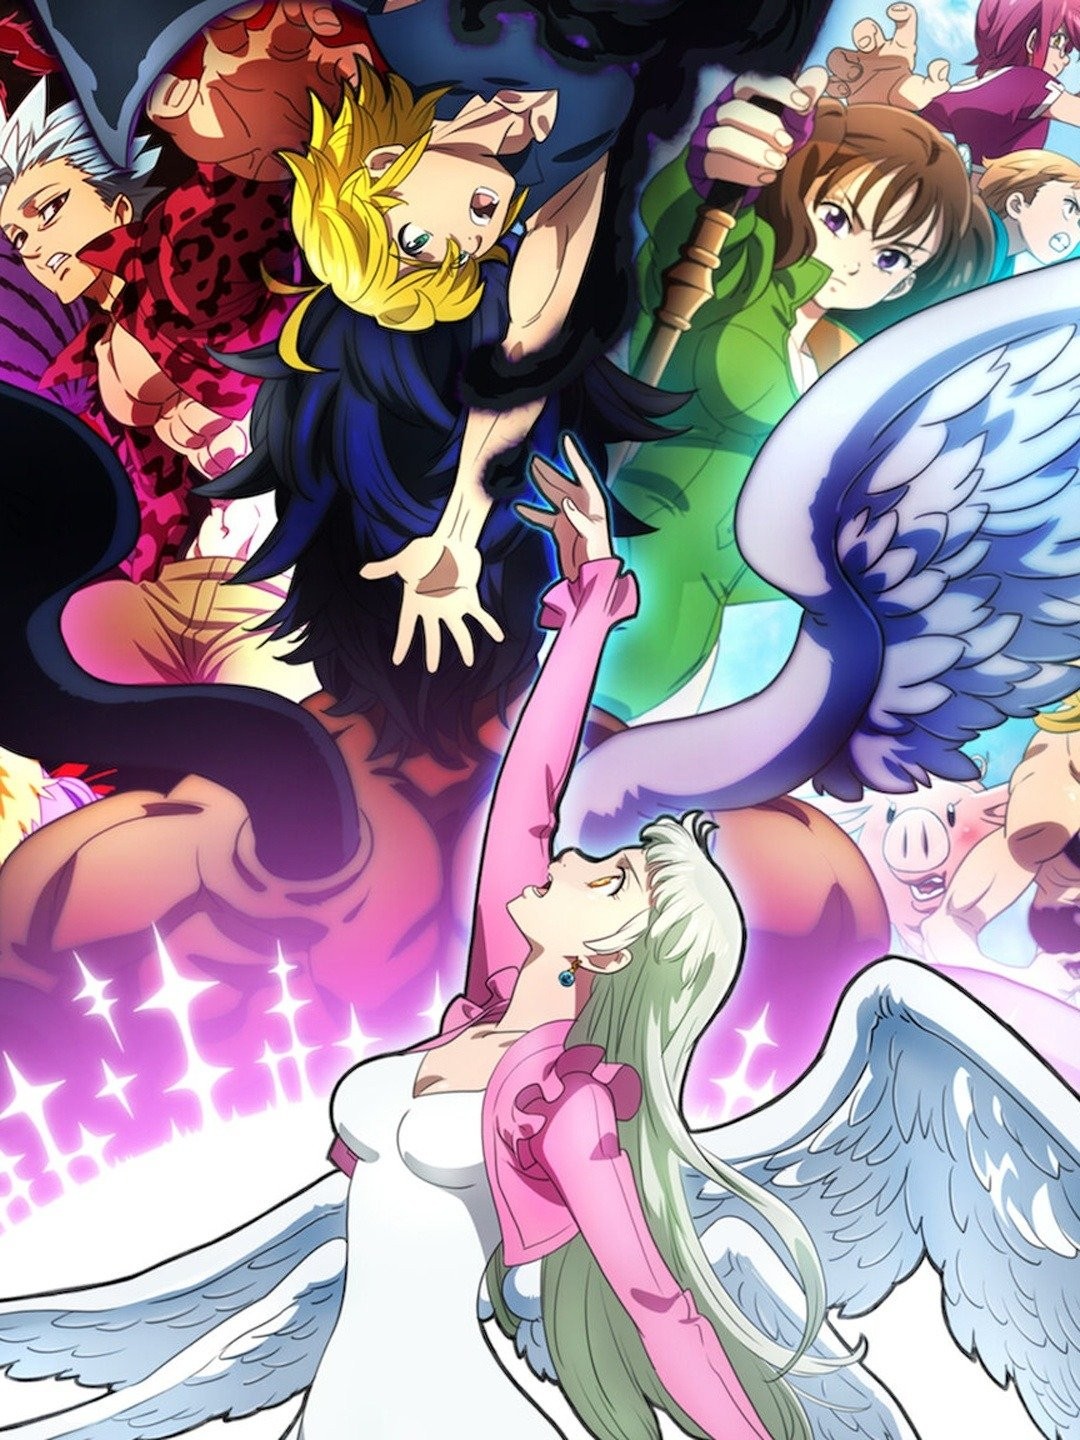 Nanatsu no Taizai (The Seven Deadly Sins) 2 Temporada Todos os Episódios  Online » Anime TV Online